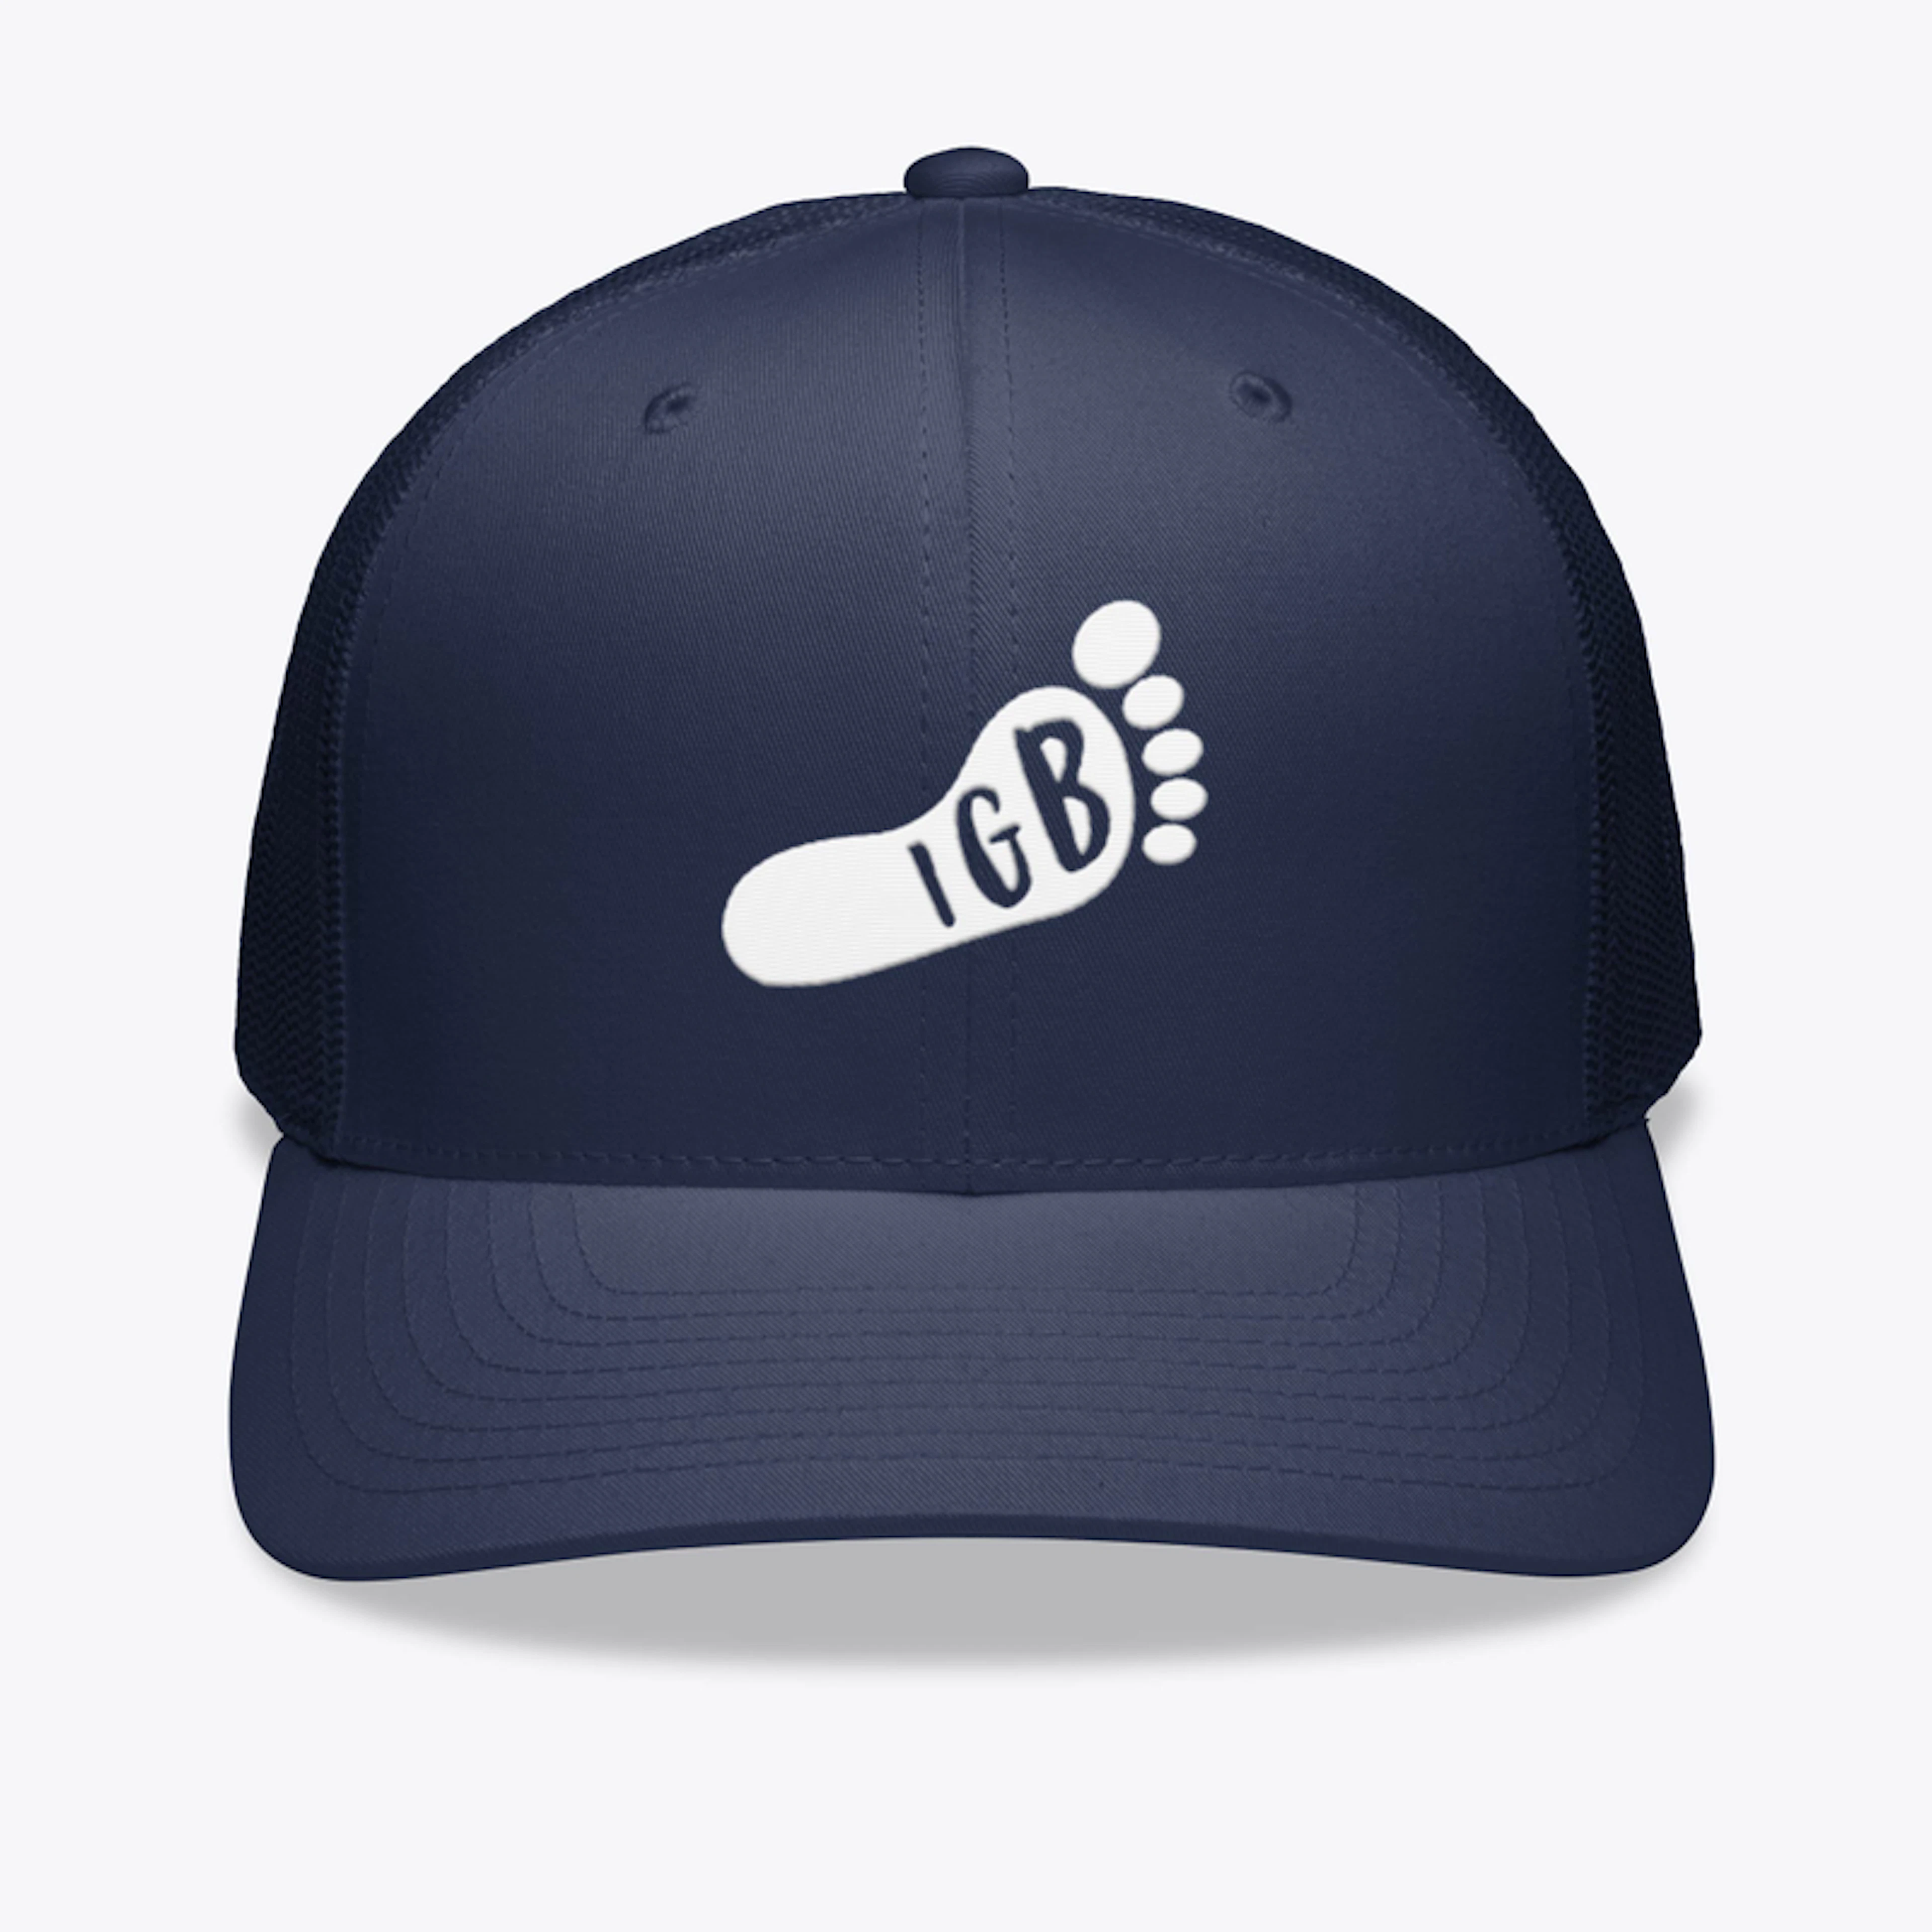 IGB Trucker Hat